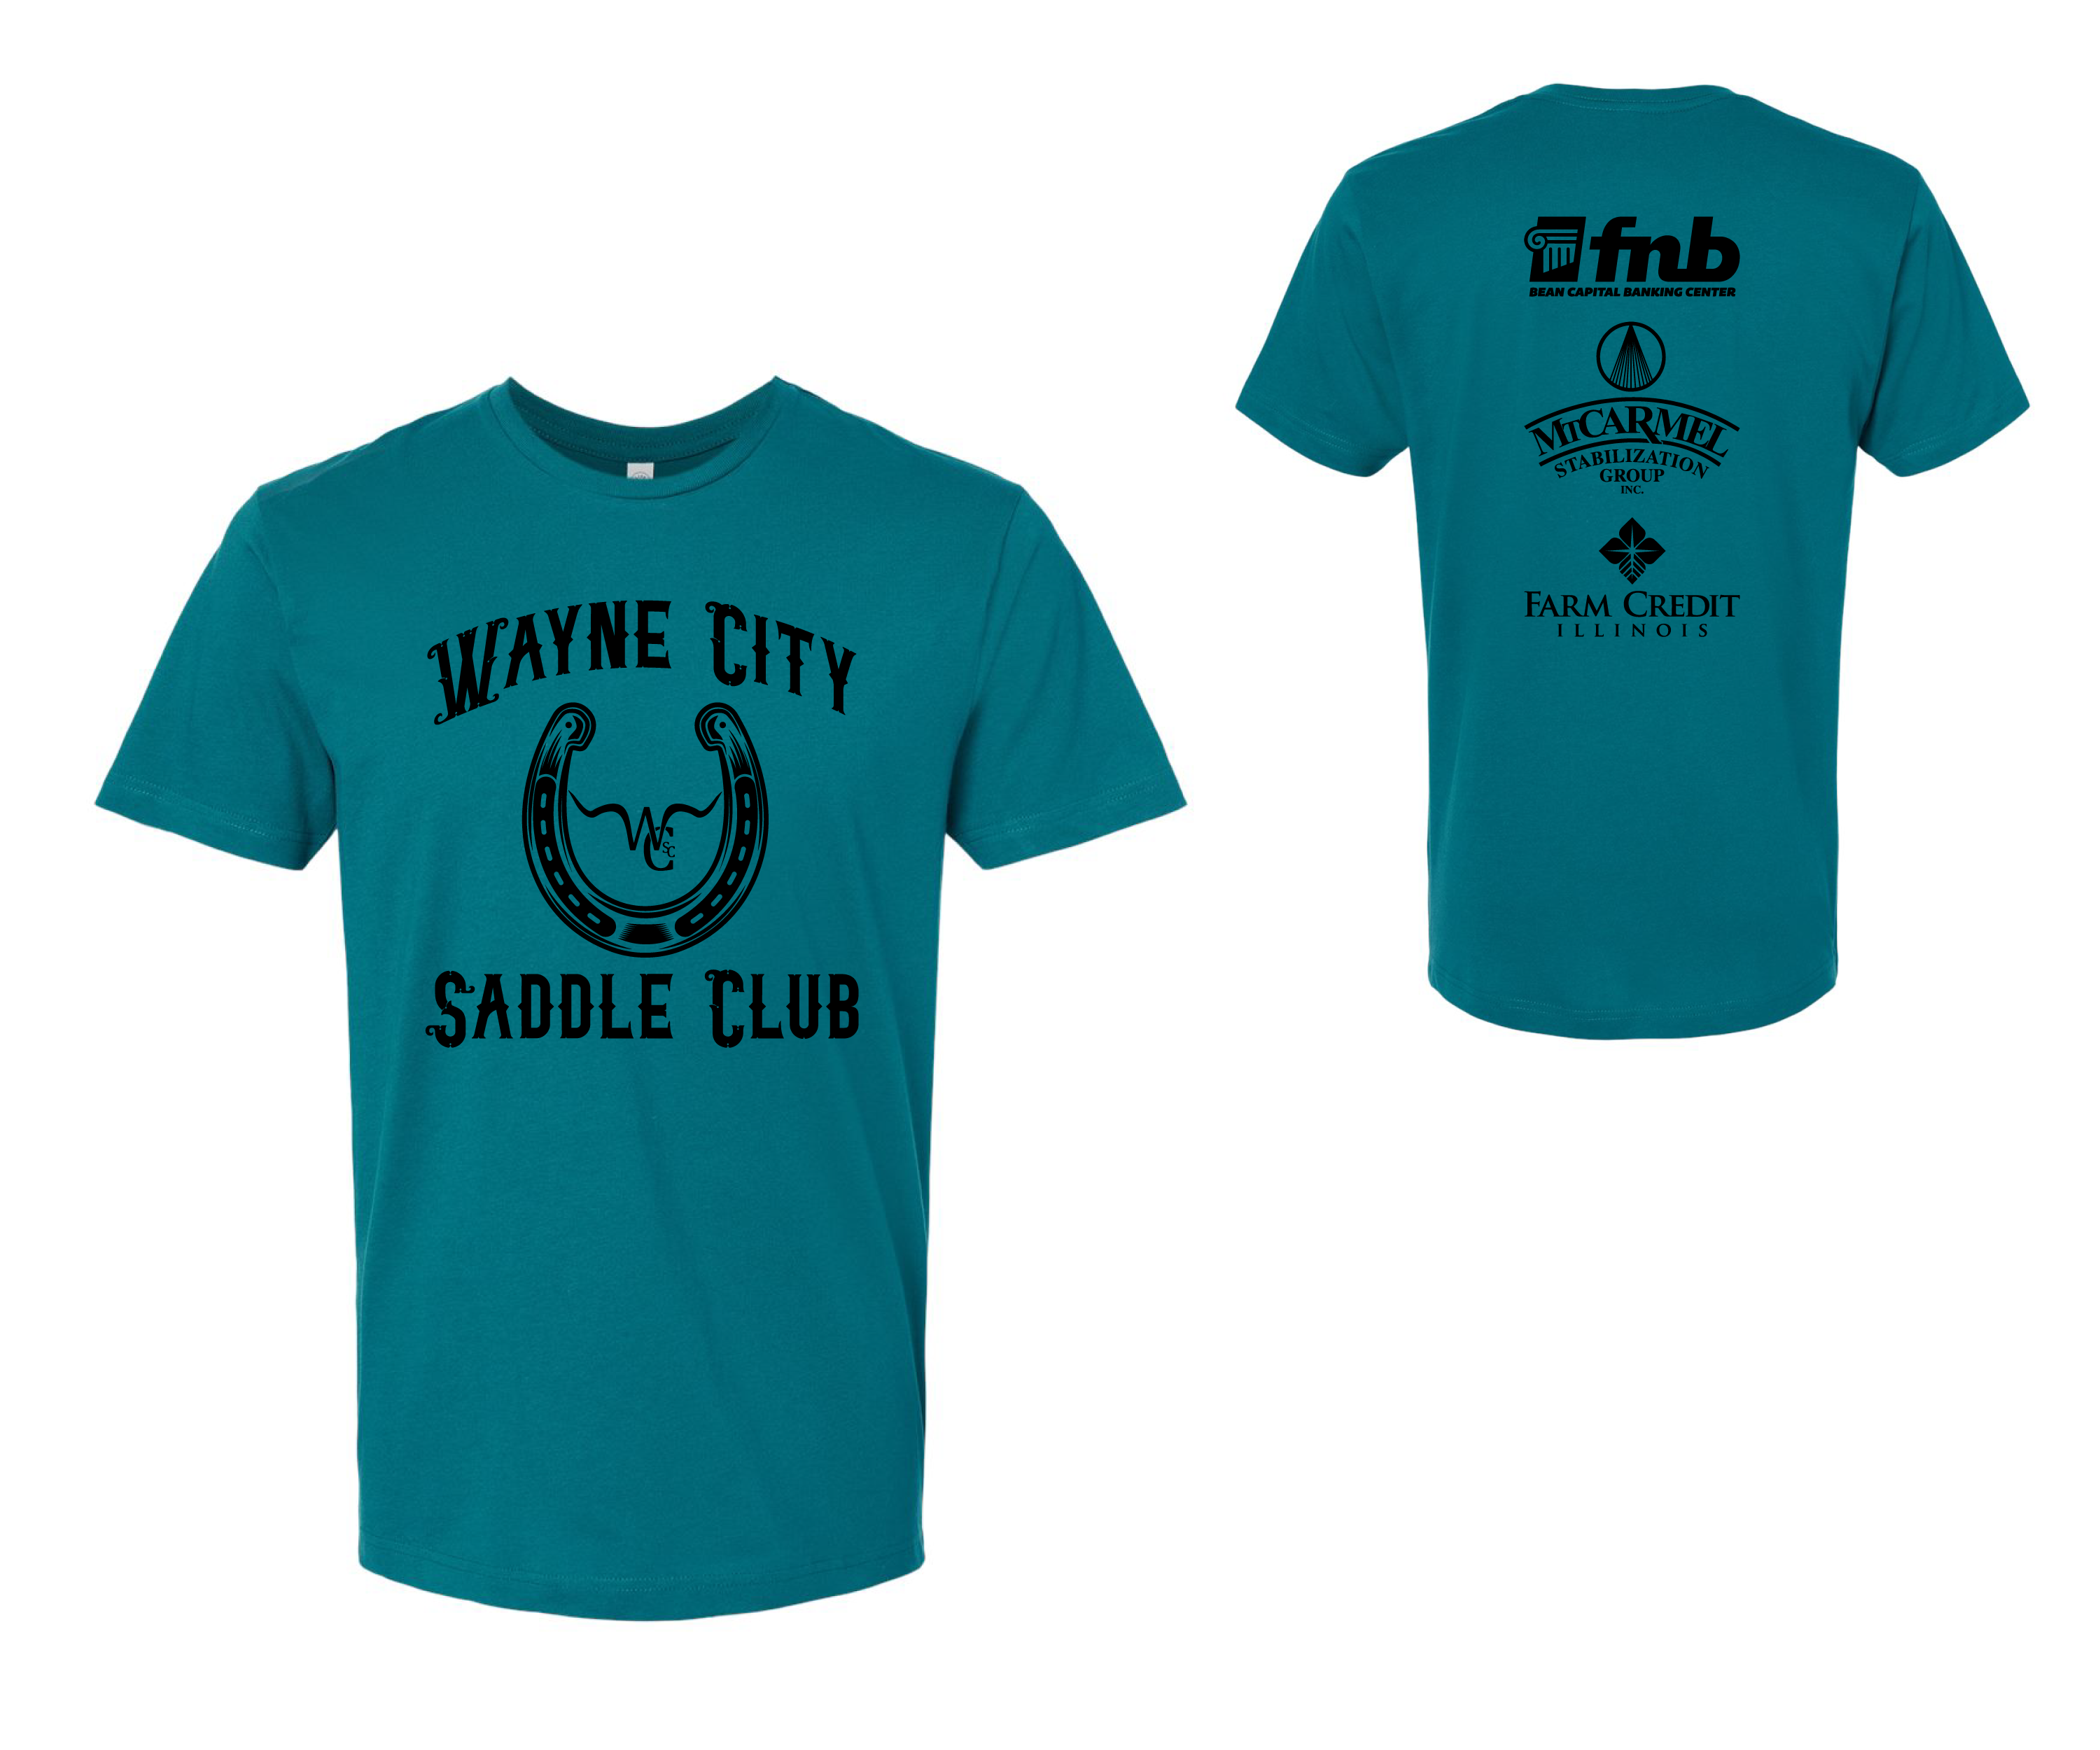 Wayne City Saddle Club Sponsor Rodeo Unisex T-Shirts